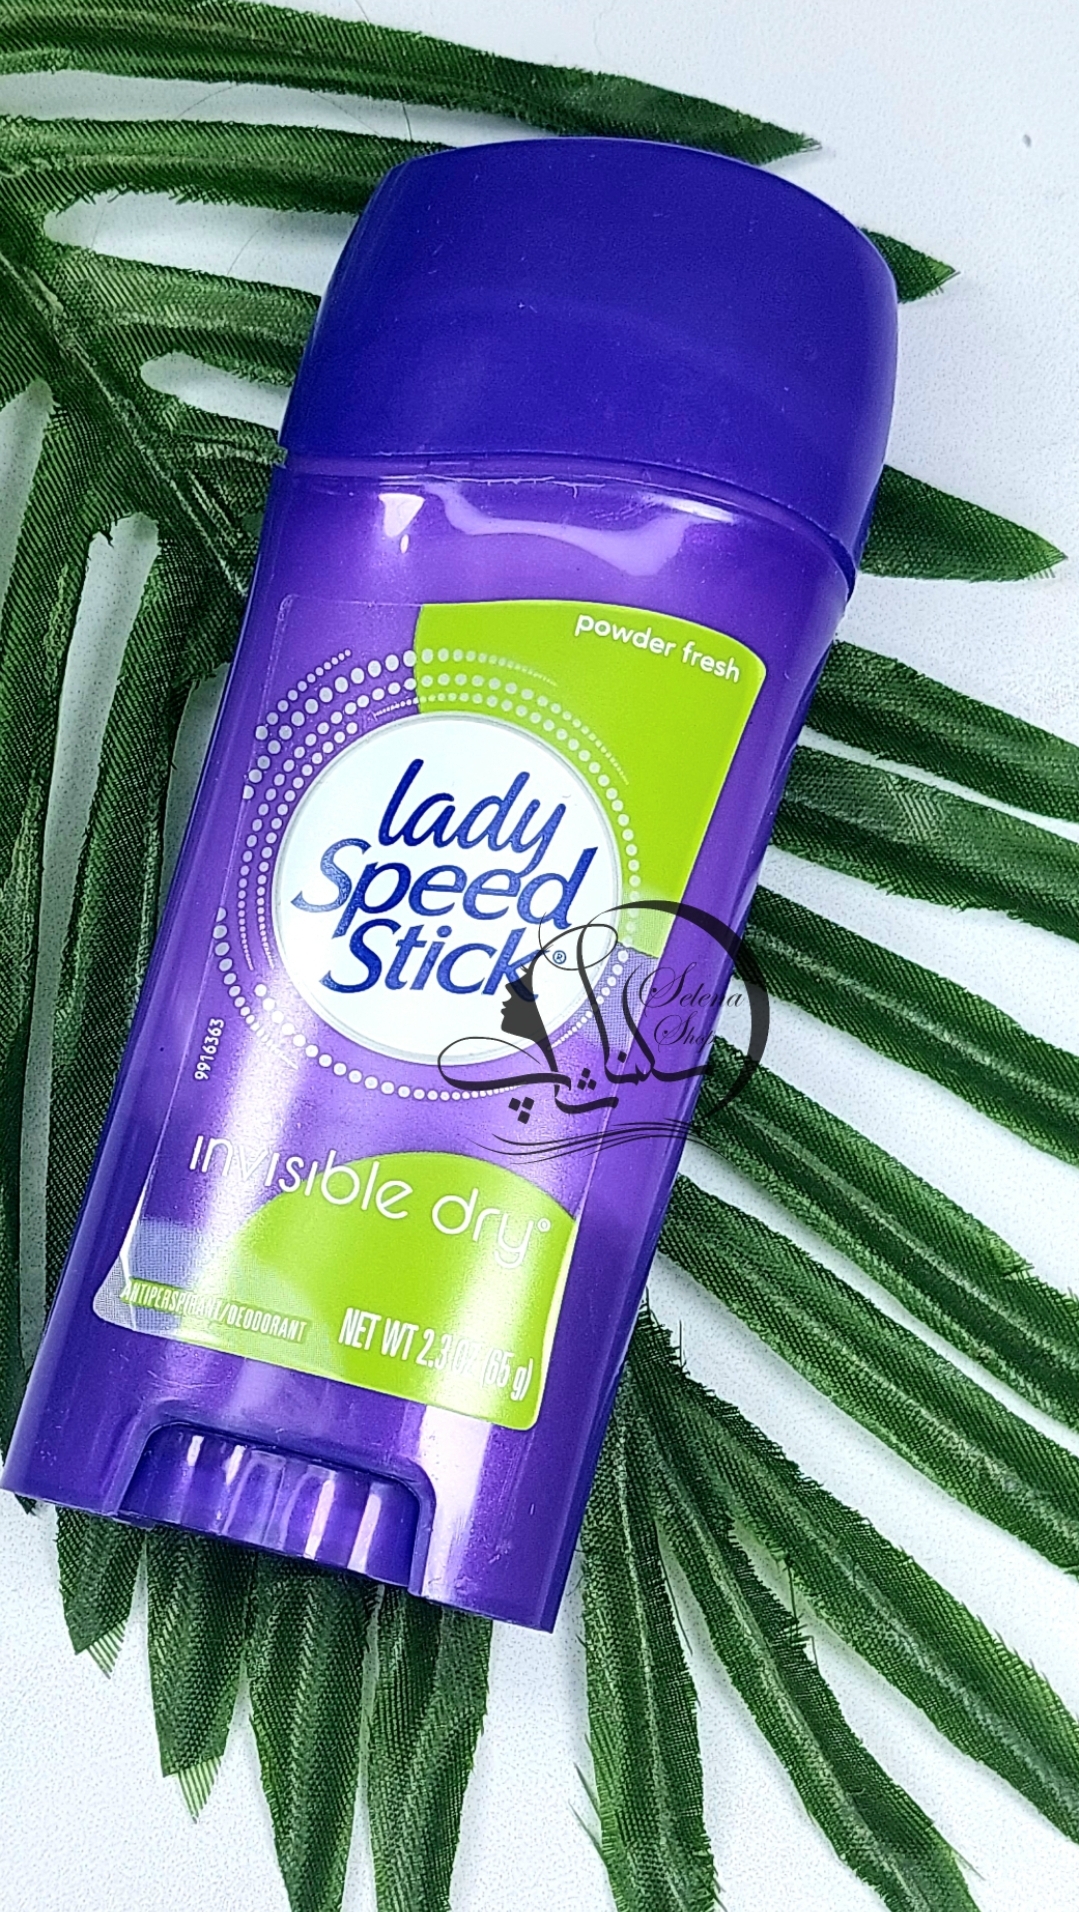 مام صابونی لیدی اسپید۶۵ گرمی استیک مدل پادر فرش اصل (آمریکایی) Lady Speed Stick Deodorant Invisible Dry Powder Fresh